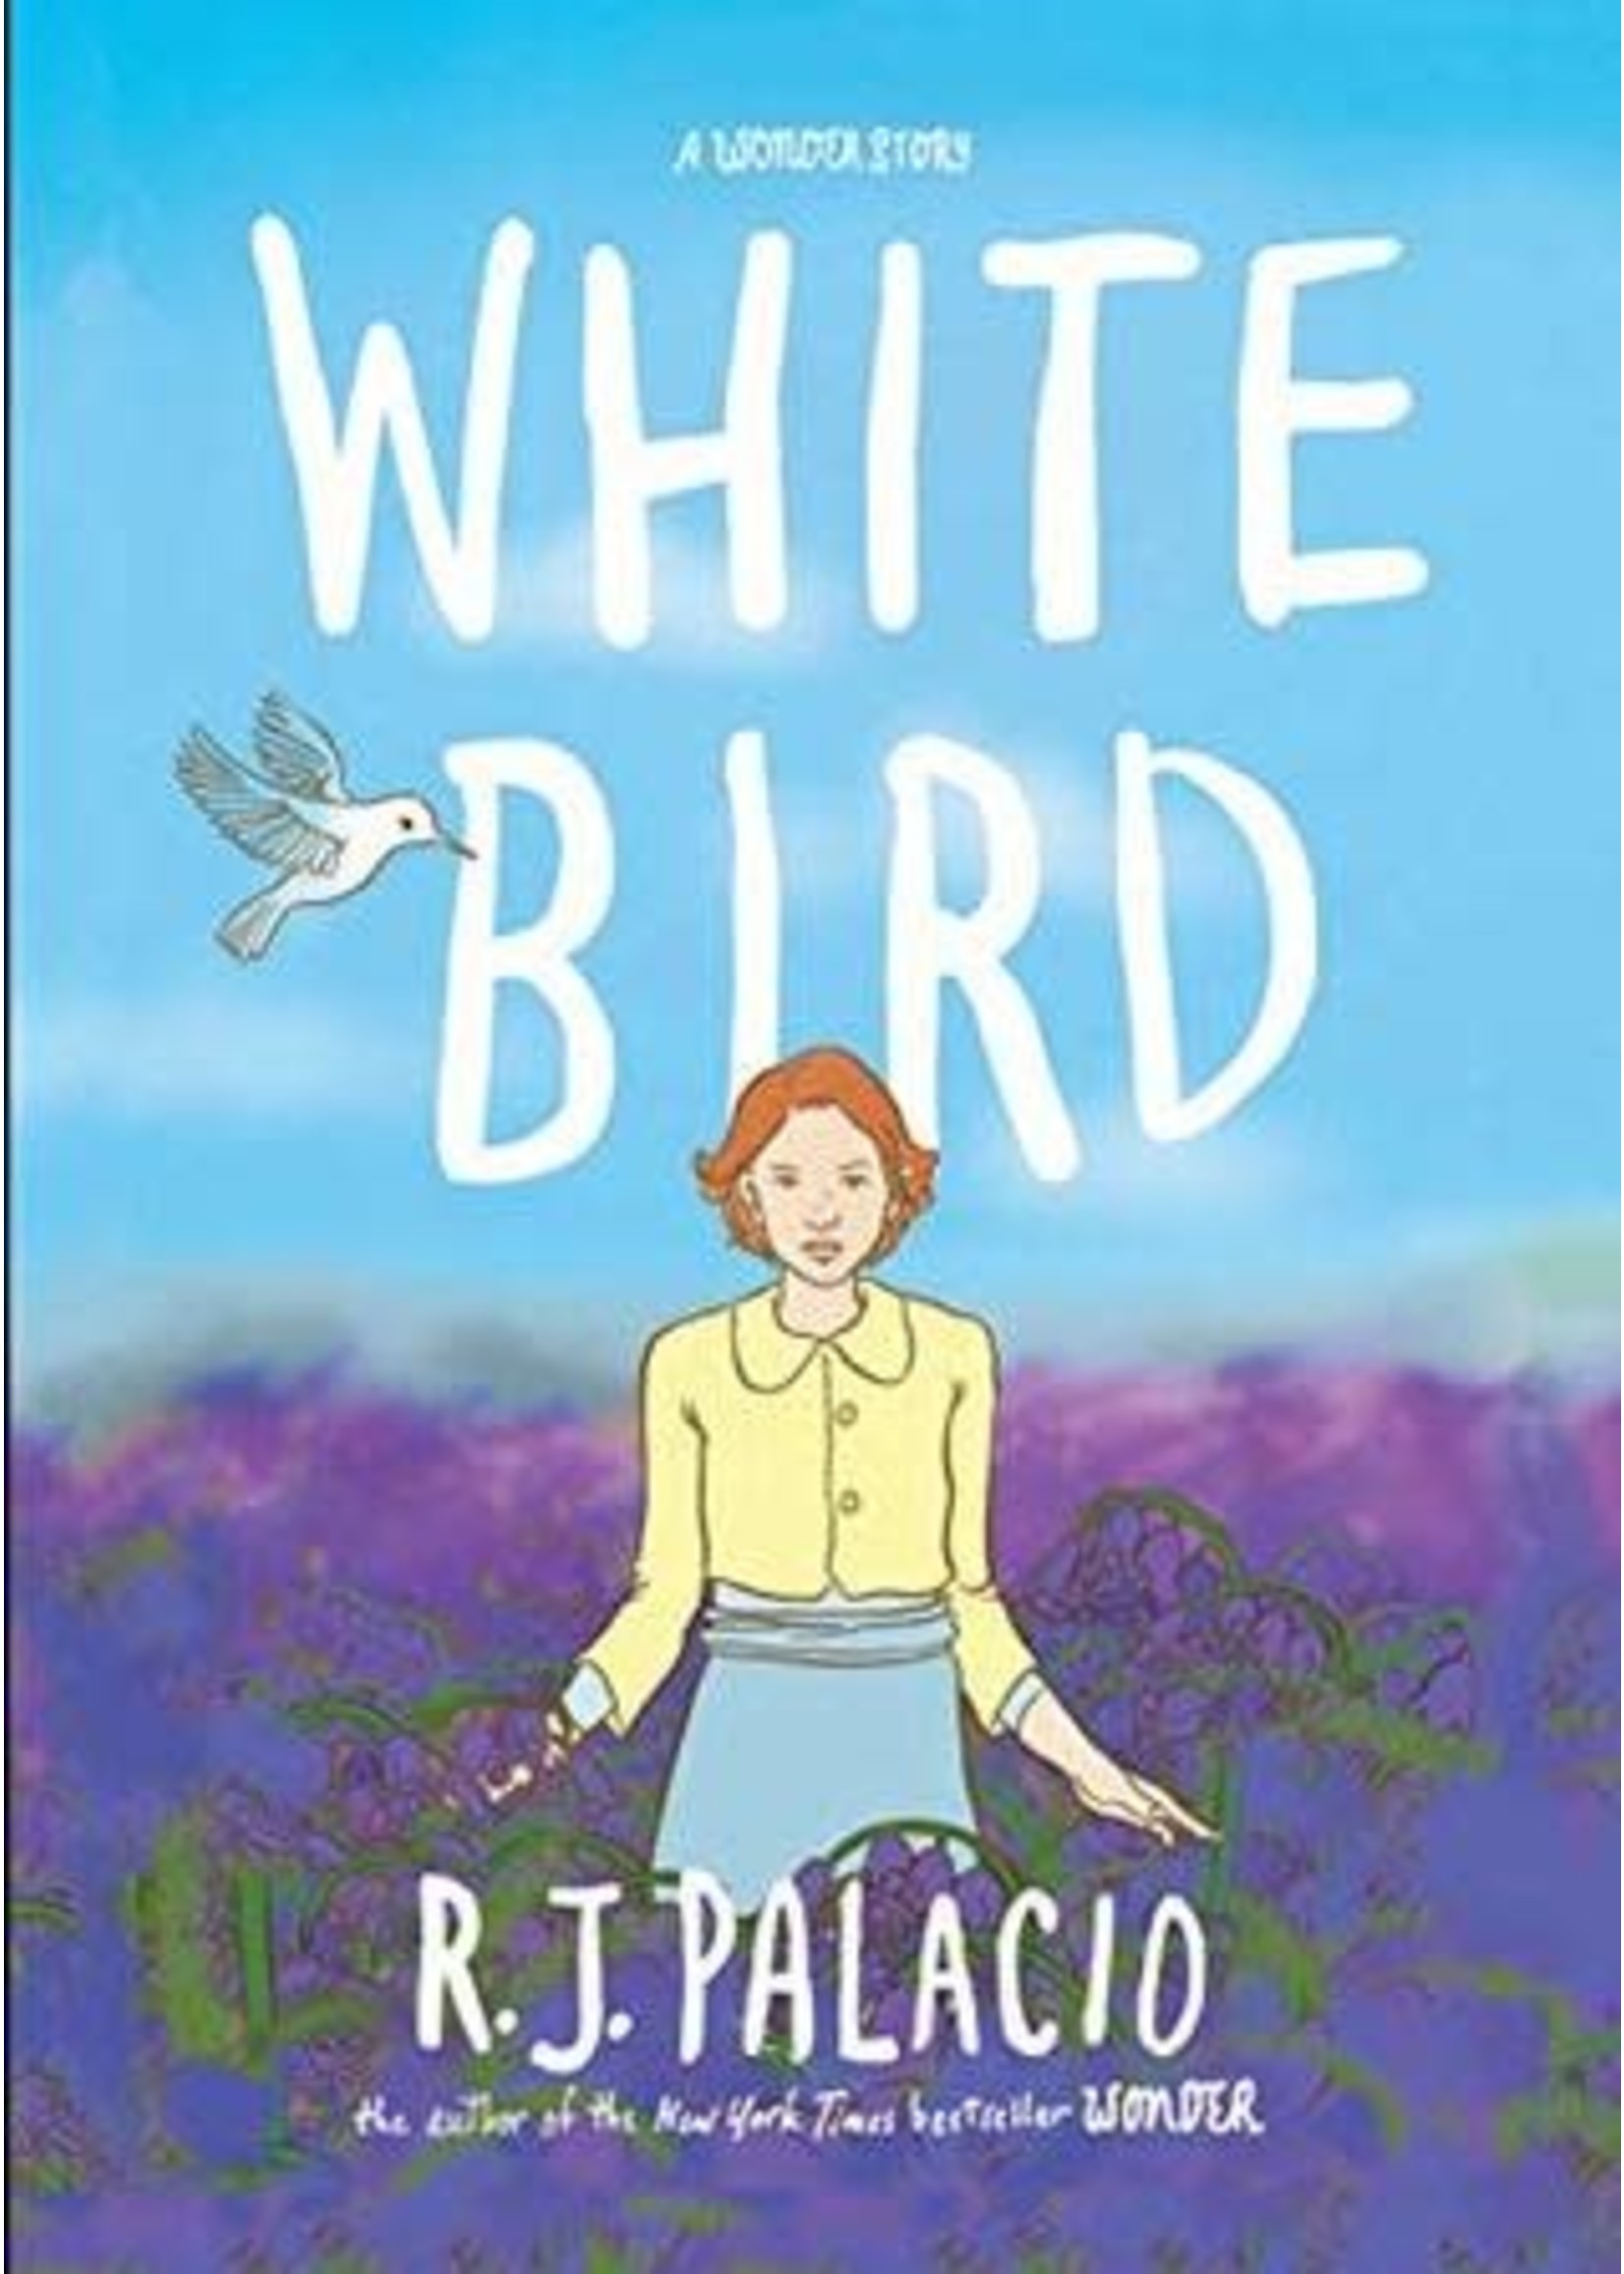 White Bird by R. J. Palacio